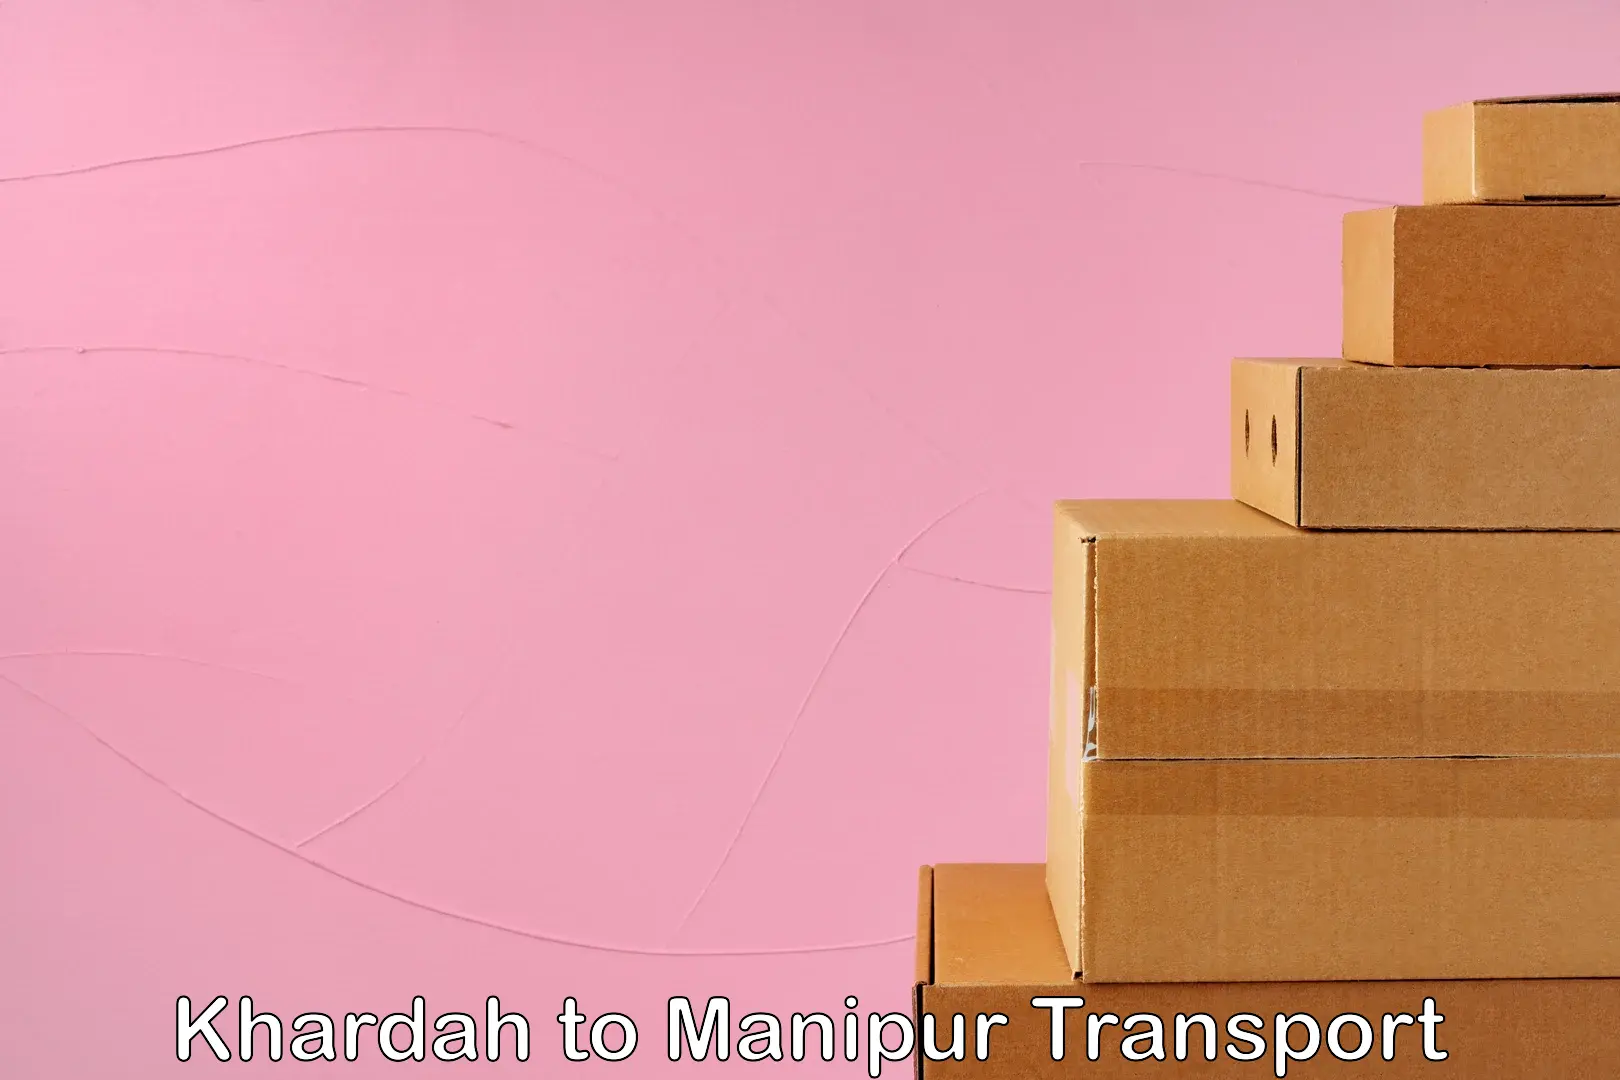 Furniture transport service in Khardah to Manipur